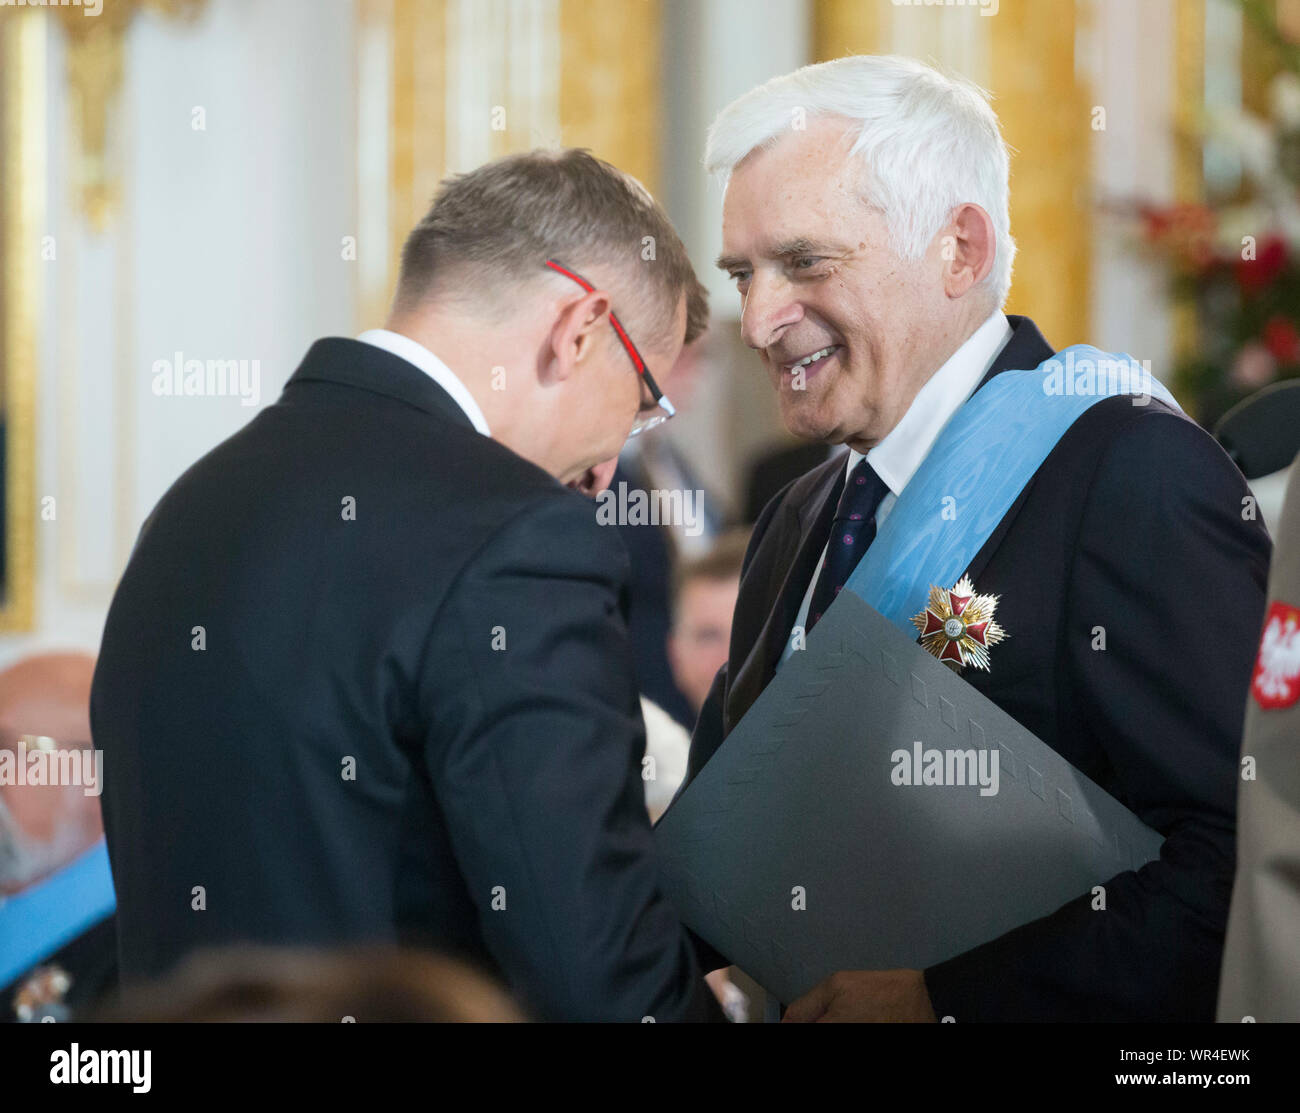 Le 6 août 2015, Varsovie, l'inauguration présidentielle en Pologne : Andrzej Duda prêté serment en tant que nouveau président polonais. Recevoir les insignes d'ordres au Royal Banque D'Images